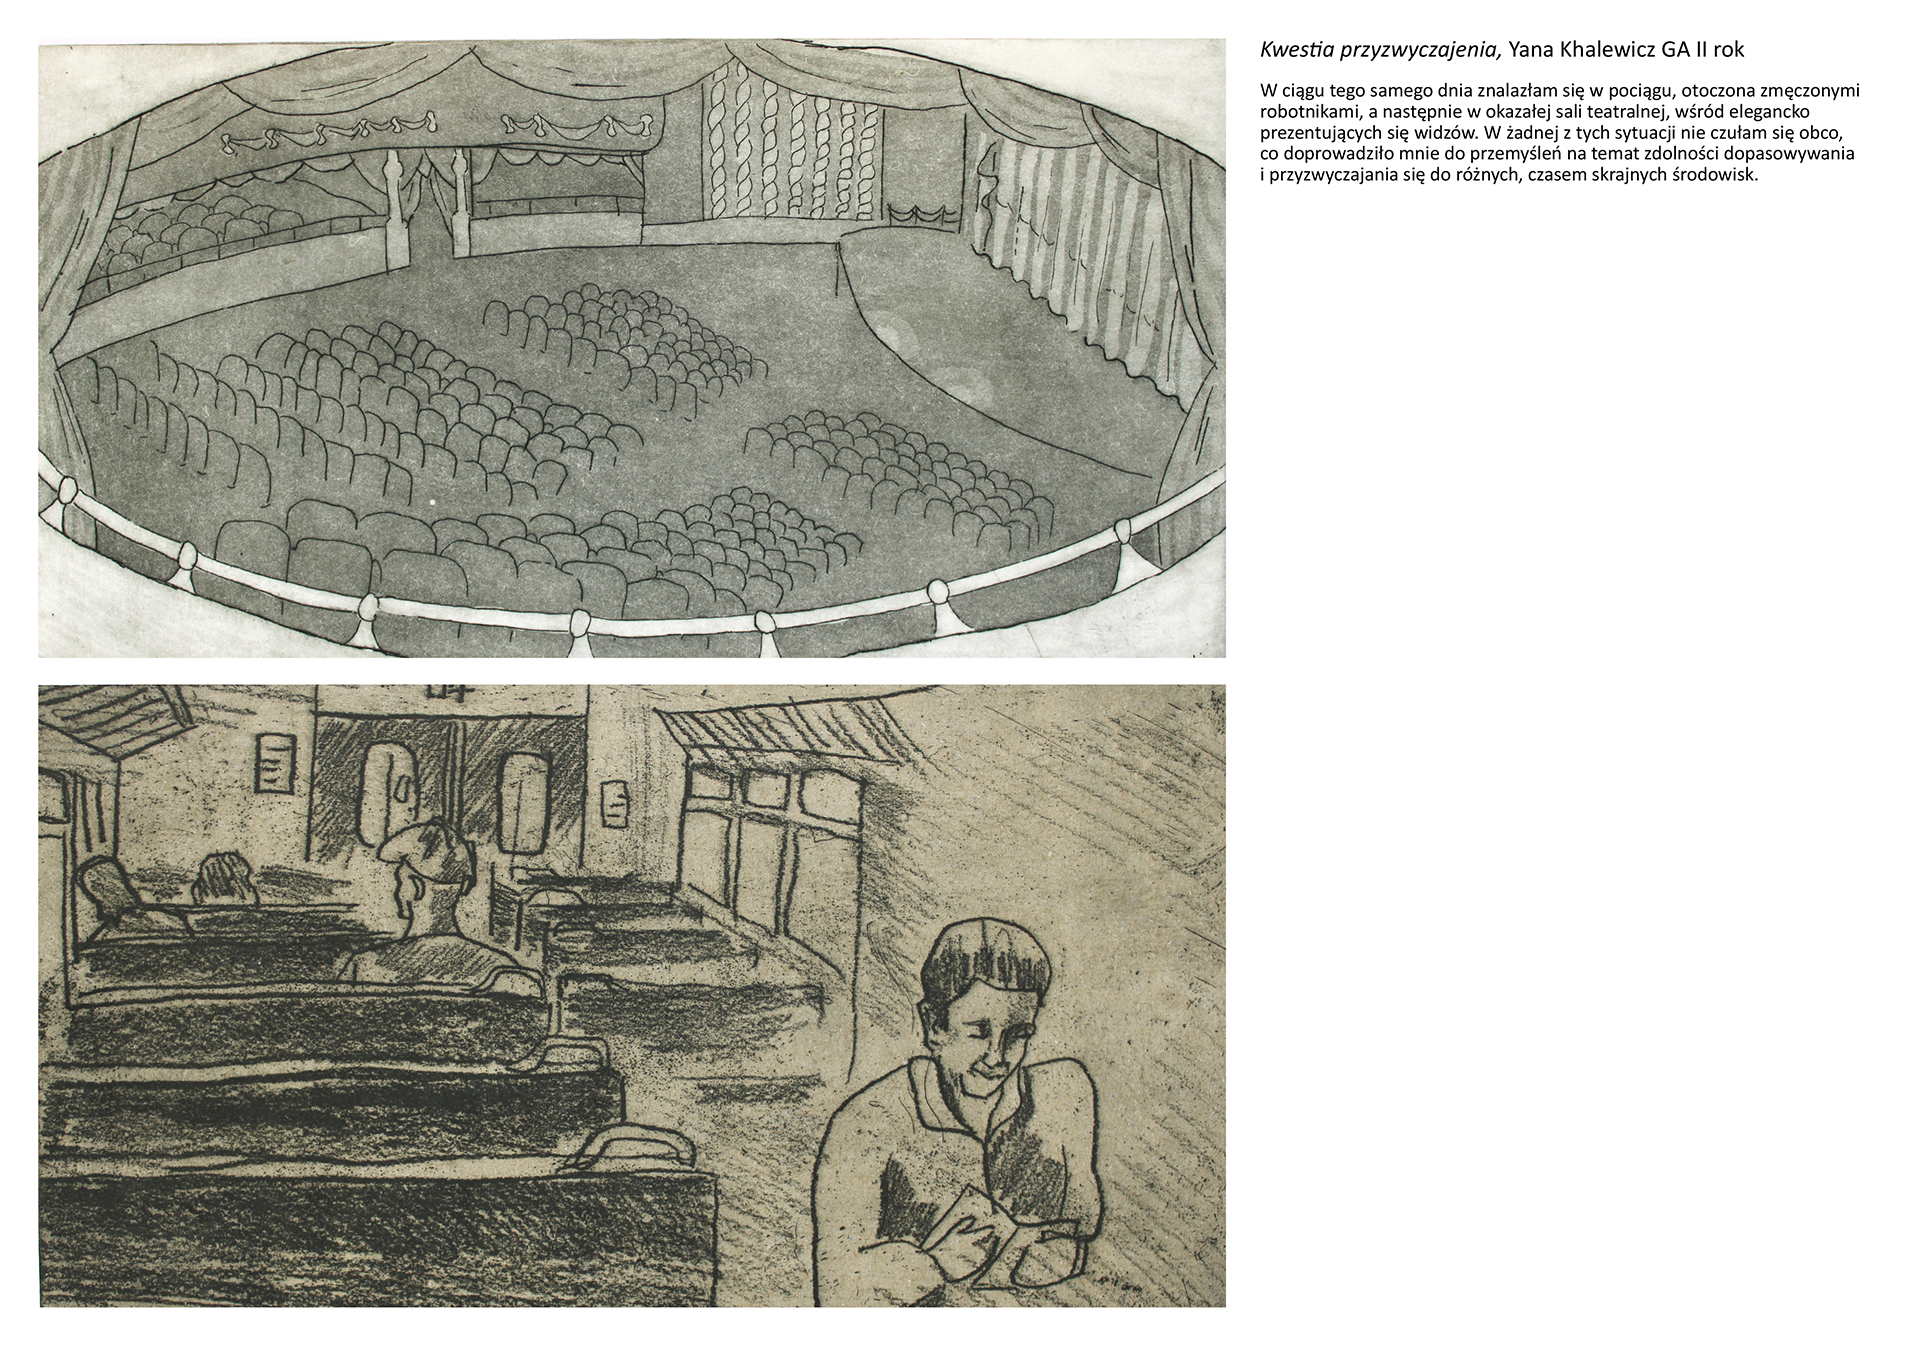 Tytuł: Kwestia przyzwyczajenia. Autorka: Yana Khalewicz. Dwie grafiki. od góry podłużna grafika przedstawiająca wnętrze opery widziane z loży na balkonie.  Dolna przedstawia widok z wnętrza pociągu, a na nim zmęczone twarze pasażerów. 